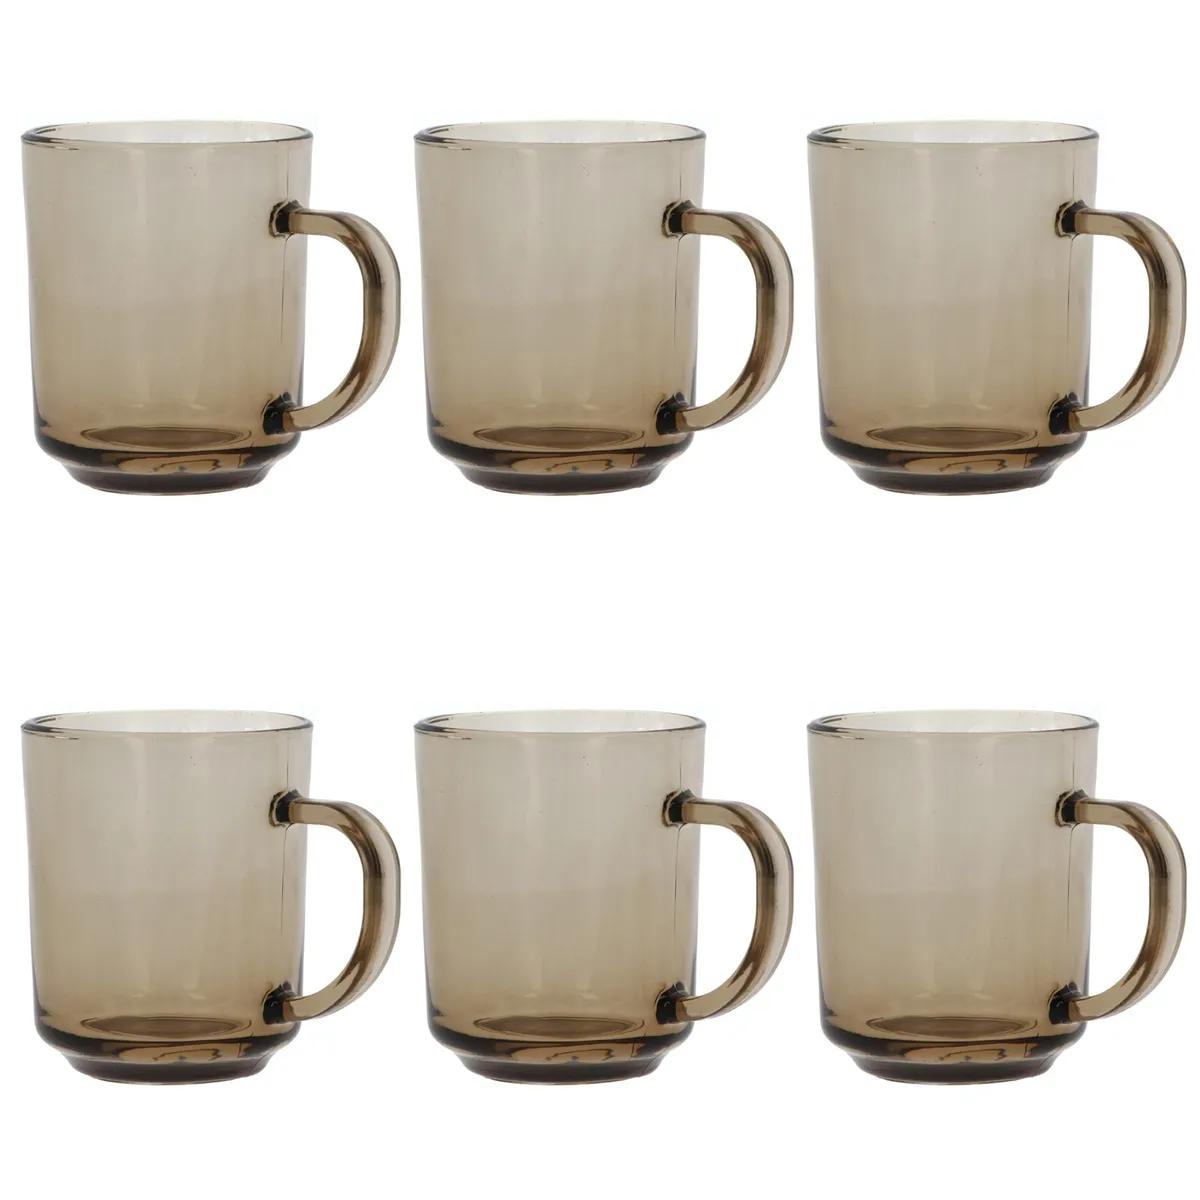 smoked glass tea cups - Are glass mugs safe for tea